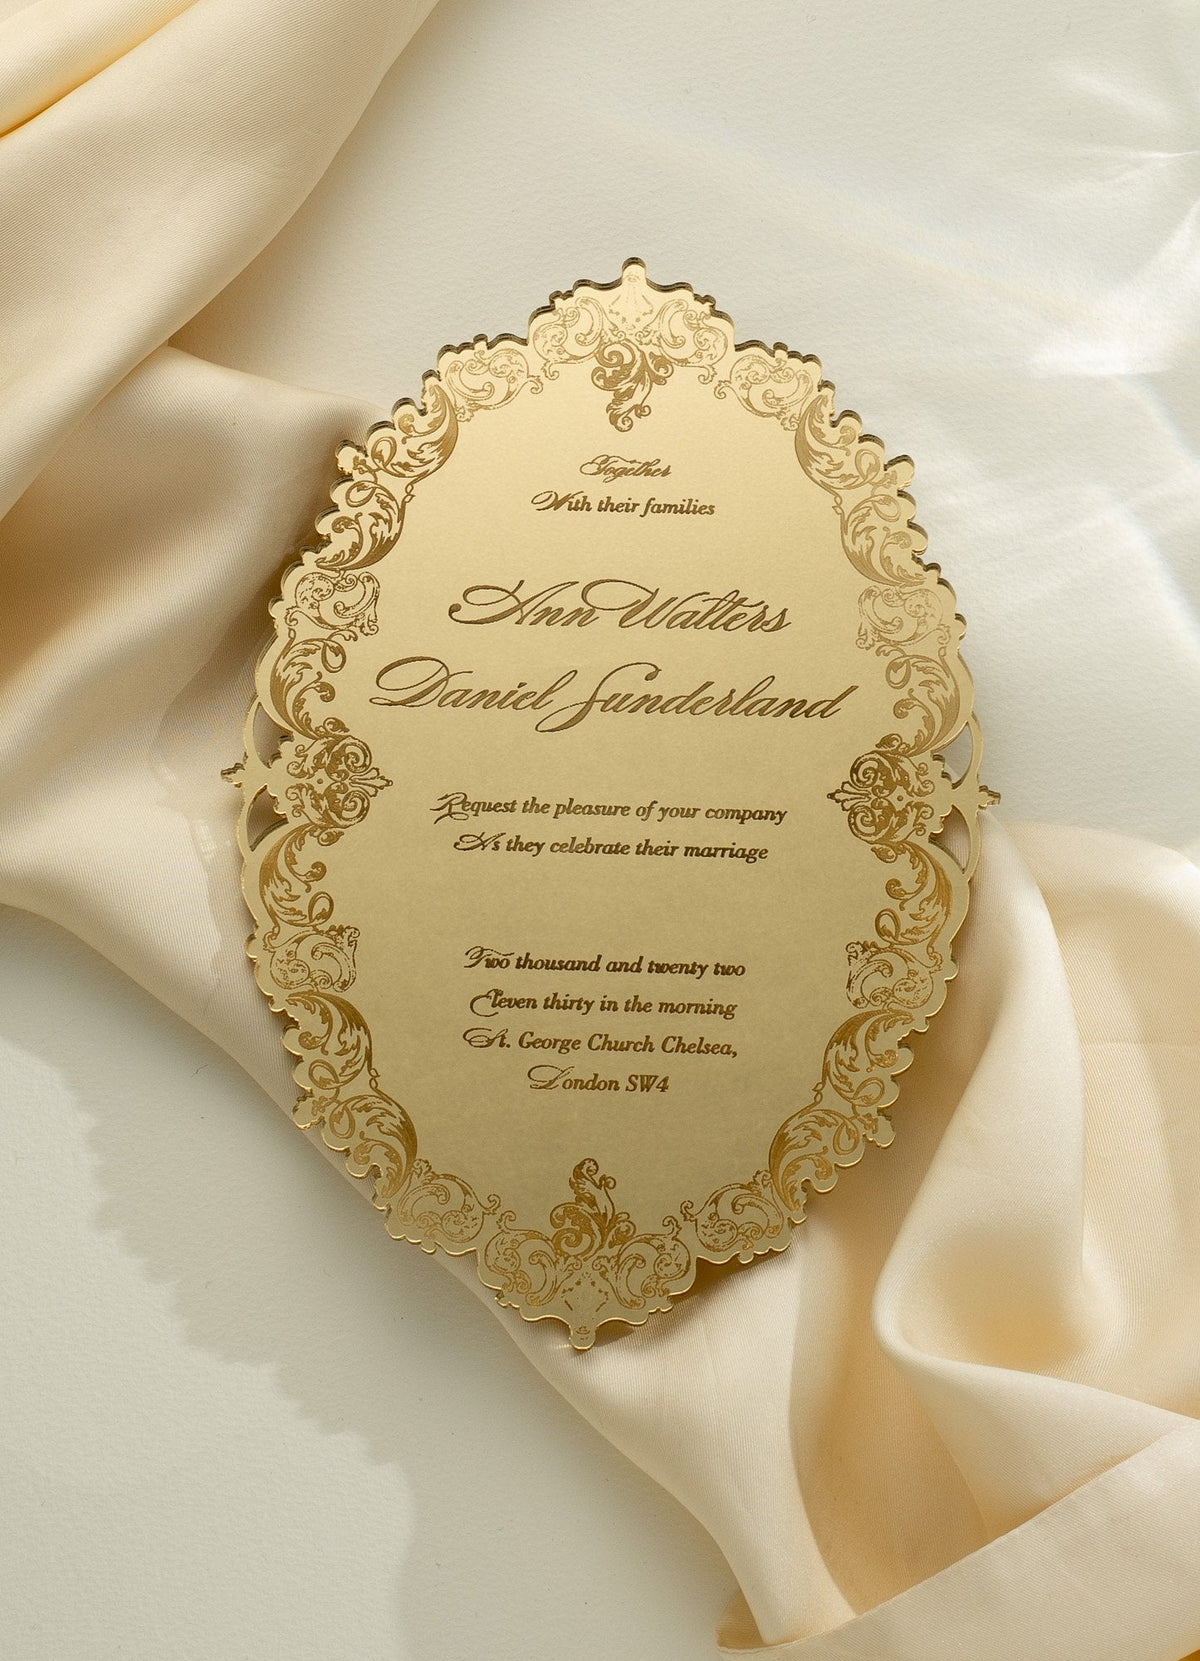 Invitation en boîte de luxe: un miroir décadent miroir argenté plexi invitation de mariage - gravé